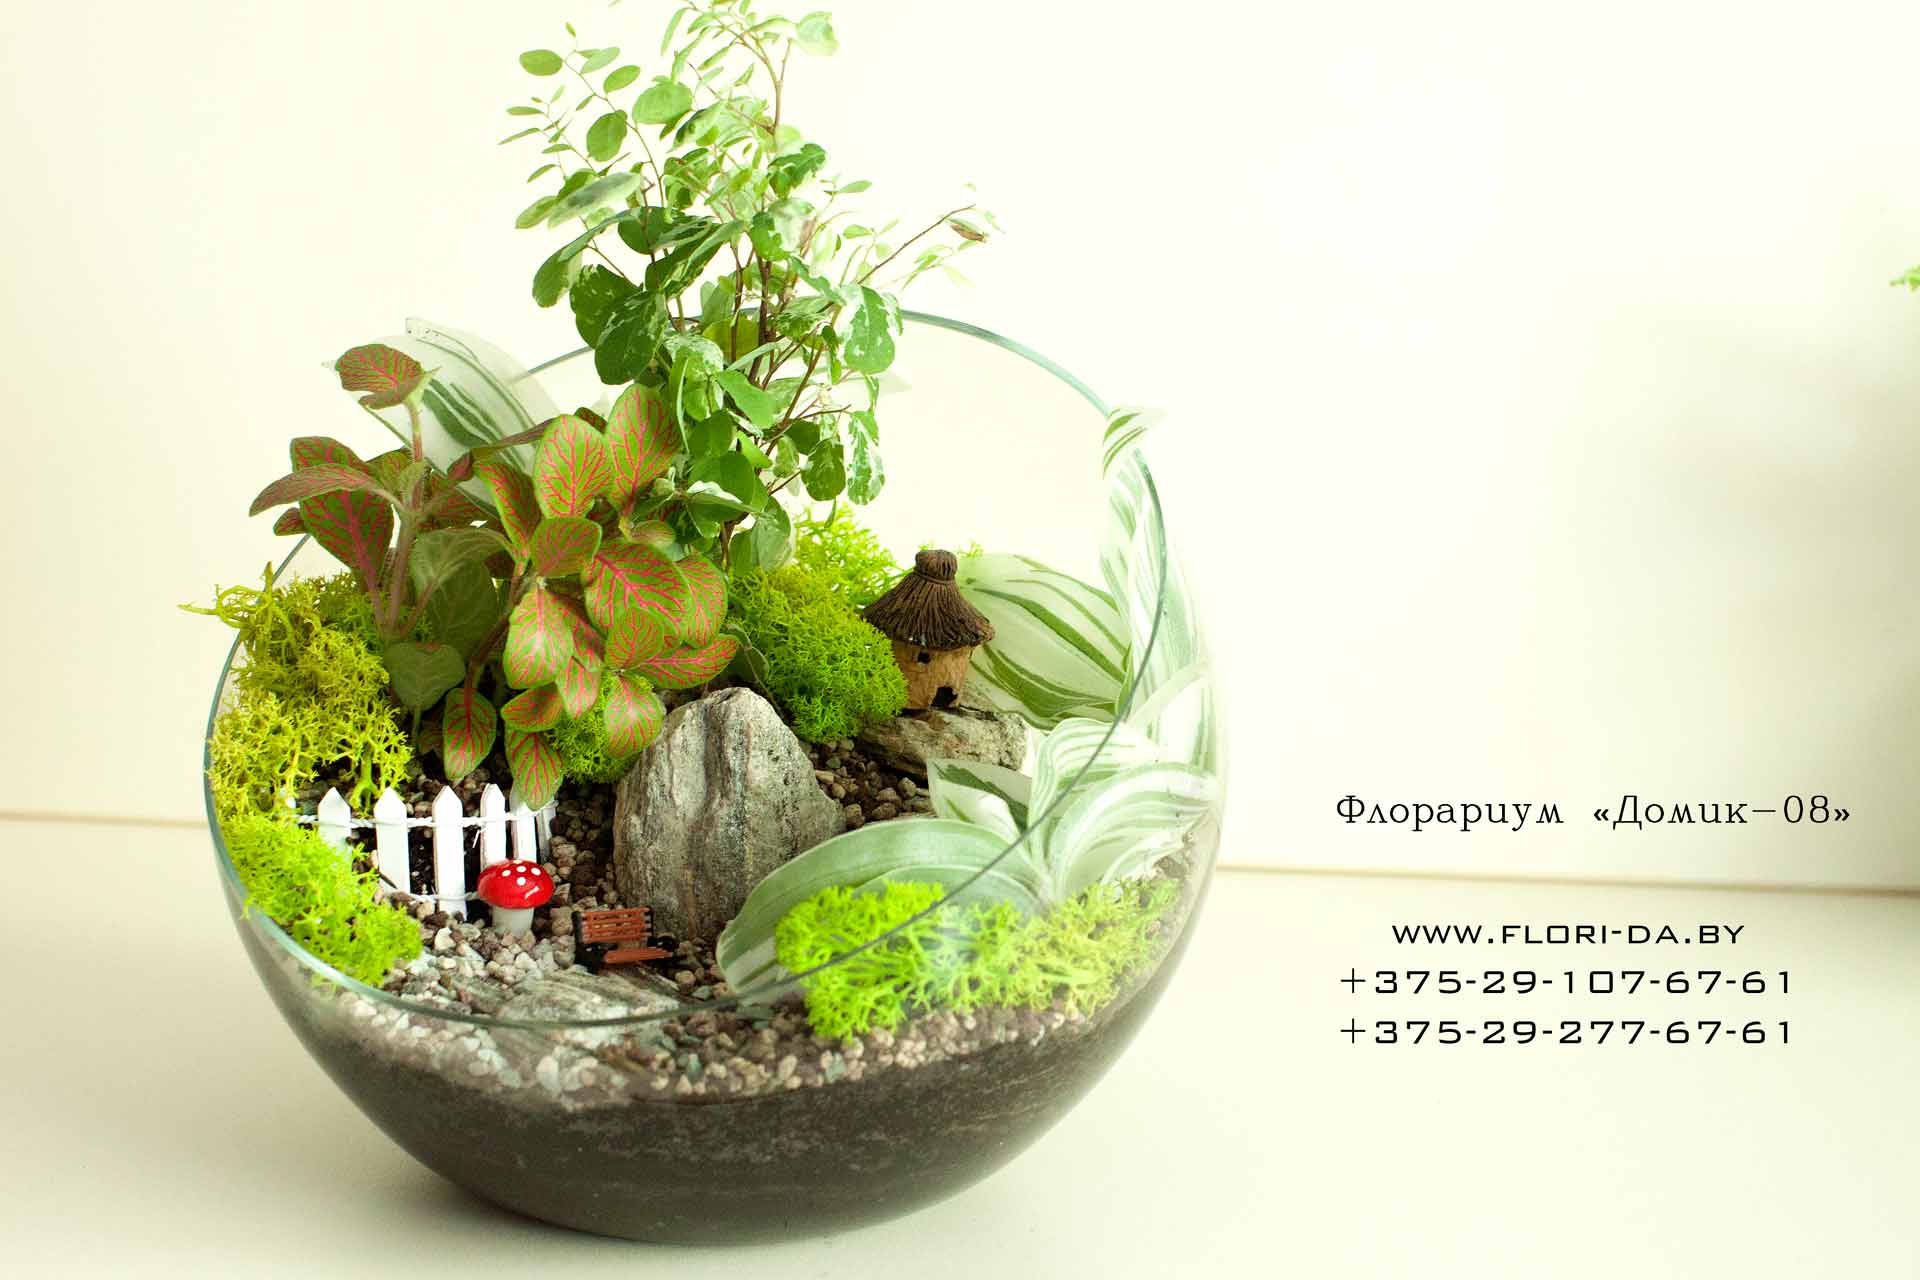 Флорариум своими руками: подбираем грунт, емкость, растения - каталог статей на сайте - домстрой